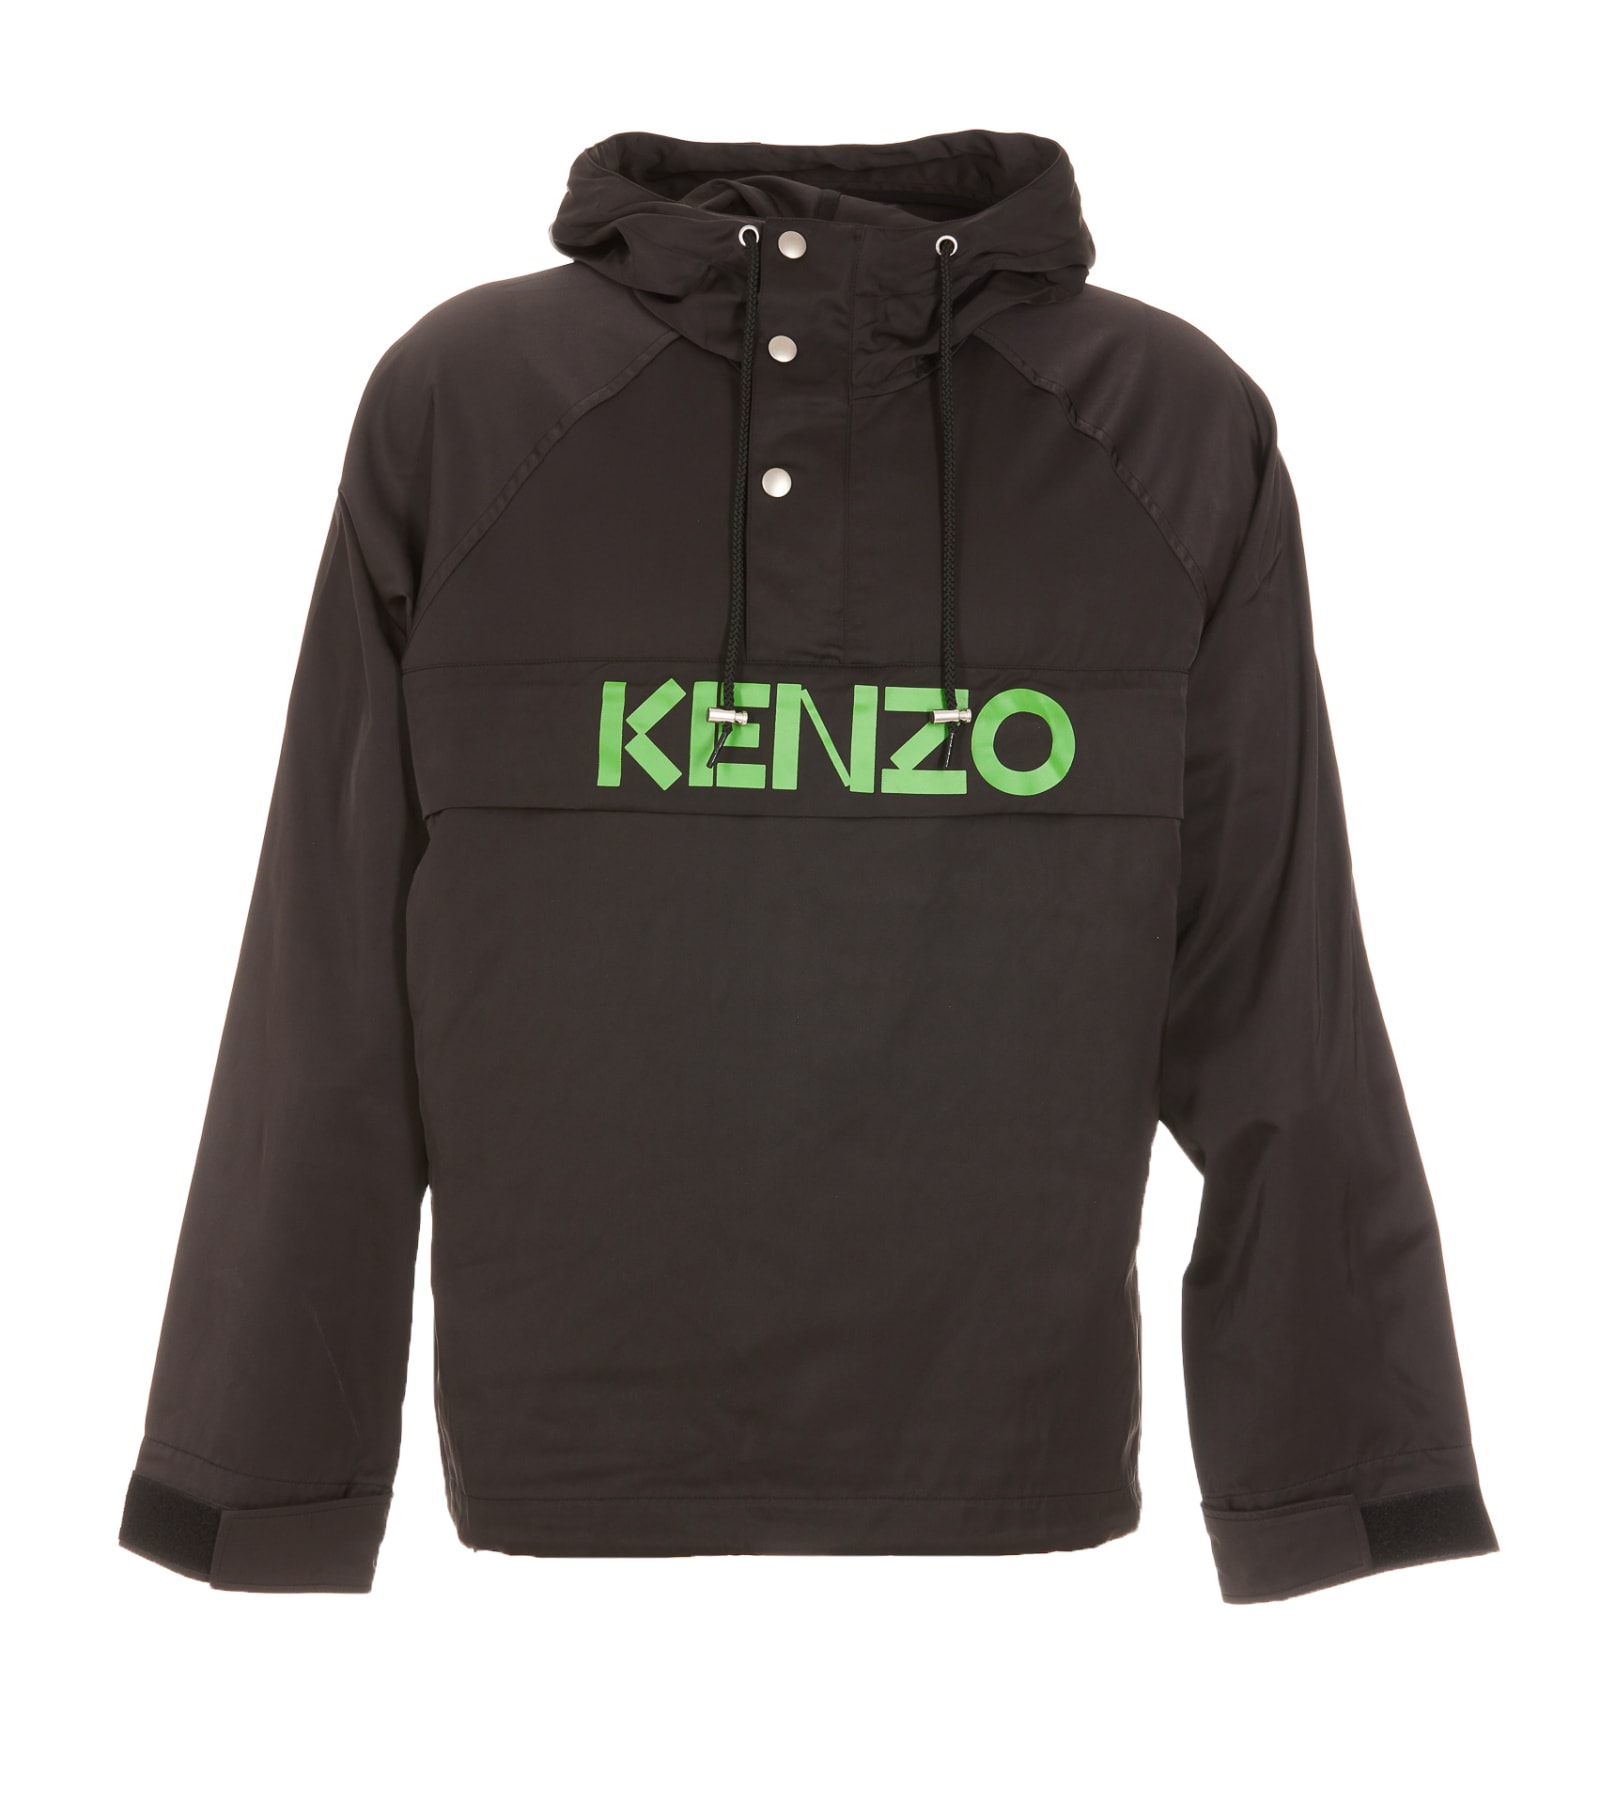 Kenzo Anorak Jacket